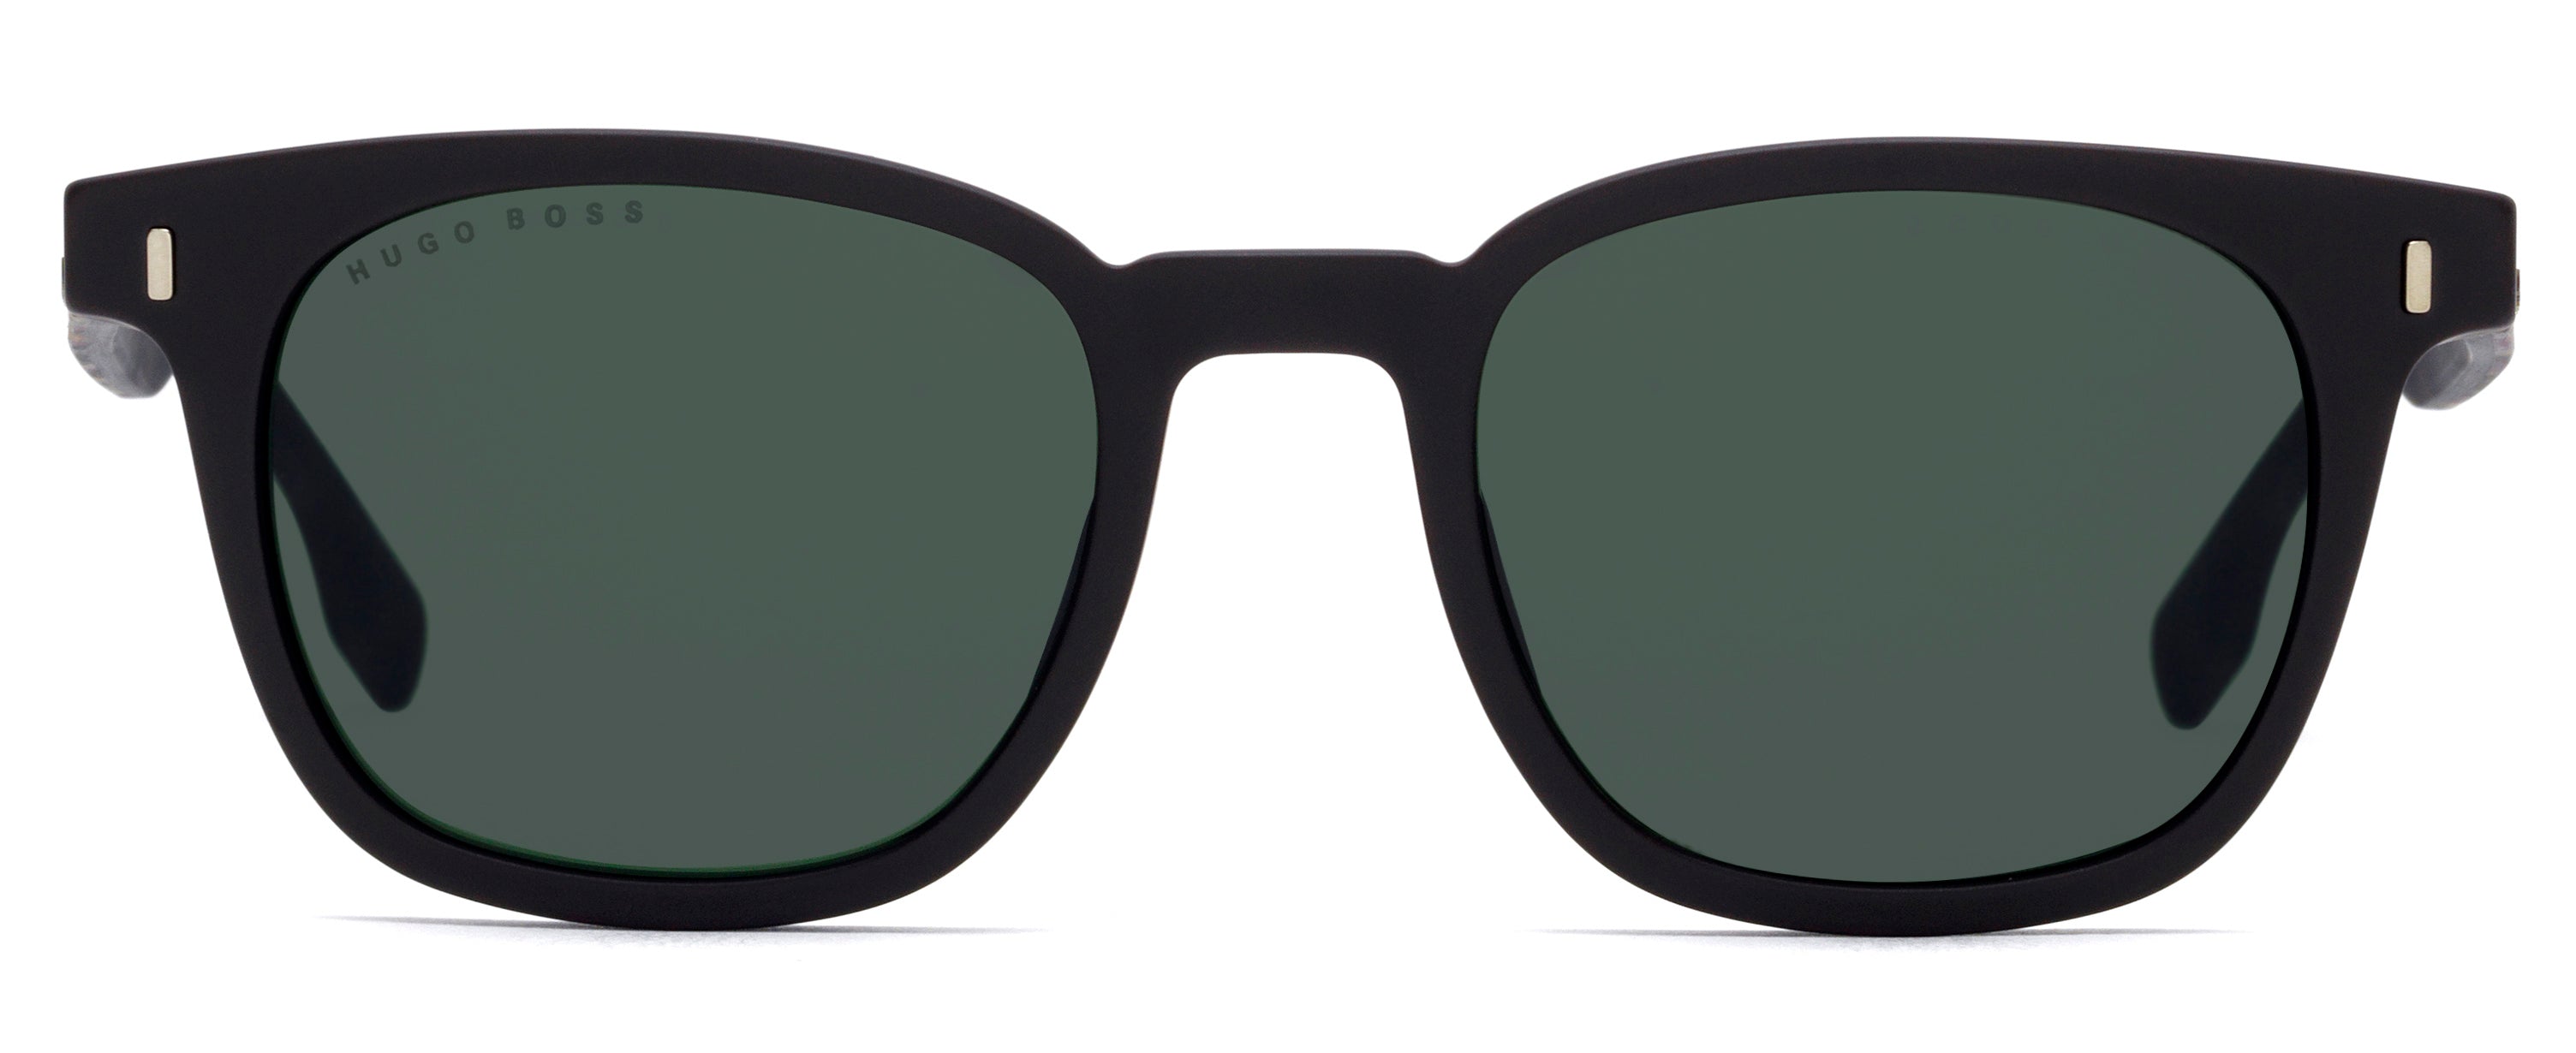 Hugo Boss 0907s Rectangle Men's Sunglasses In Green | ModeSens